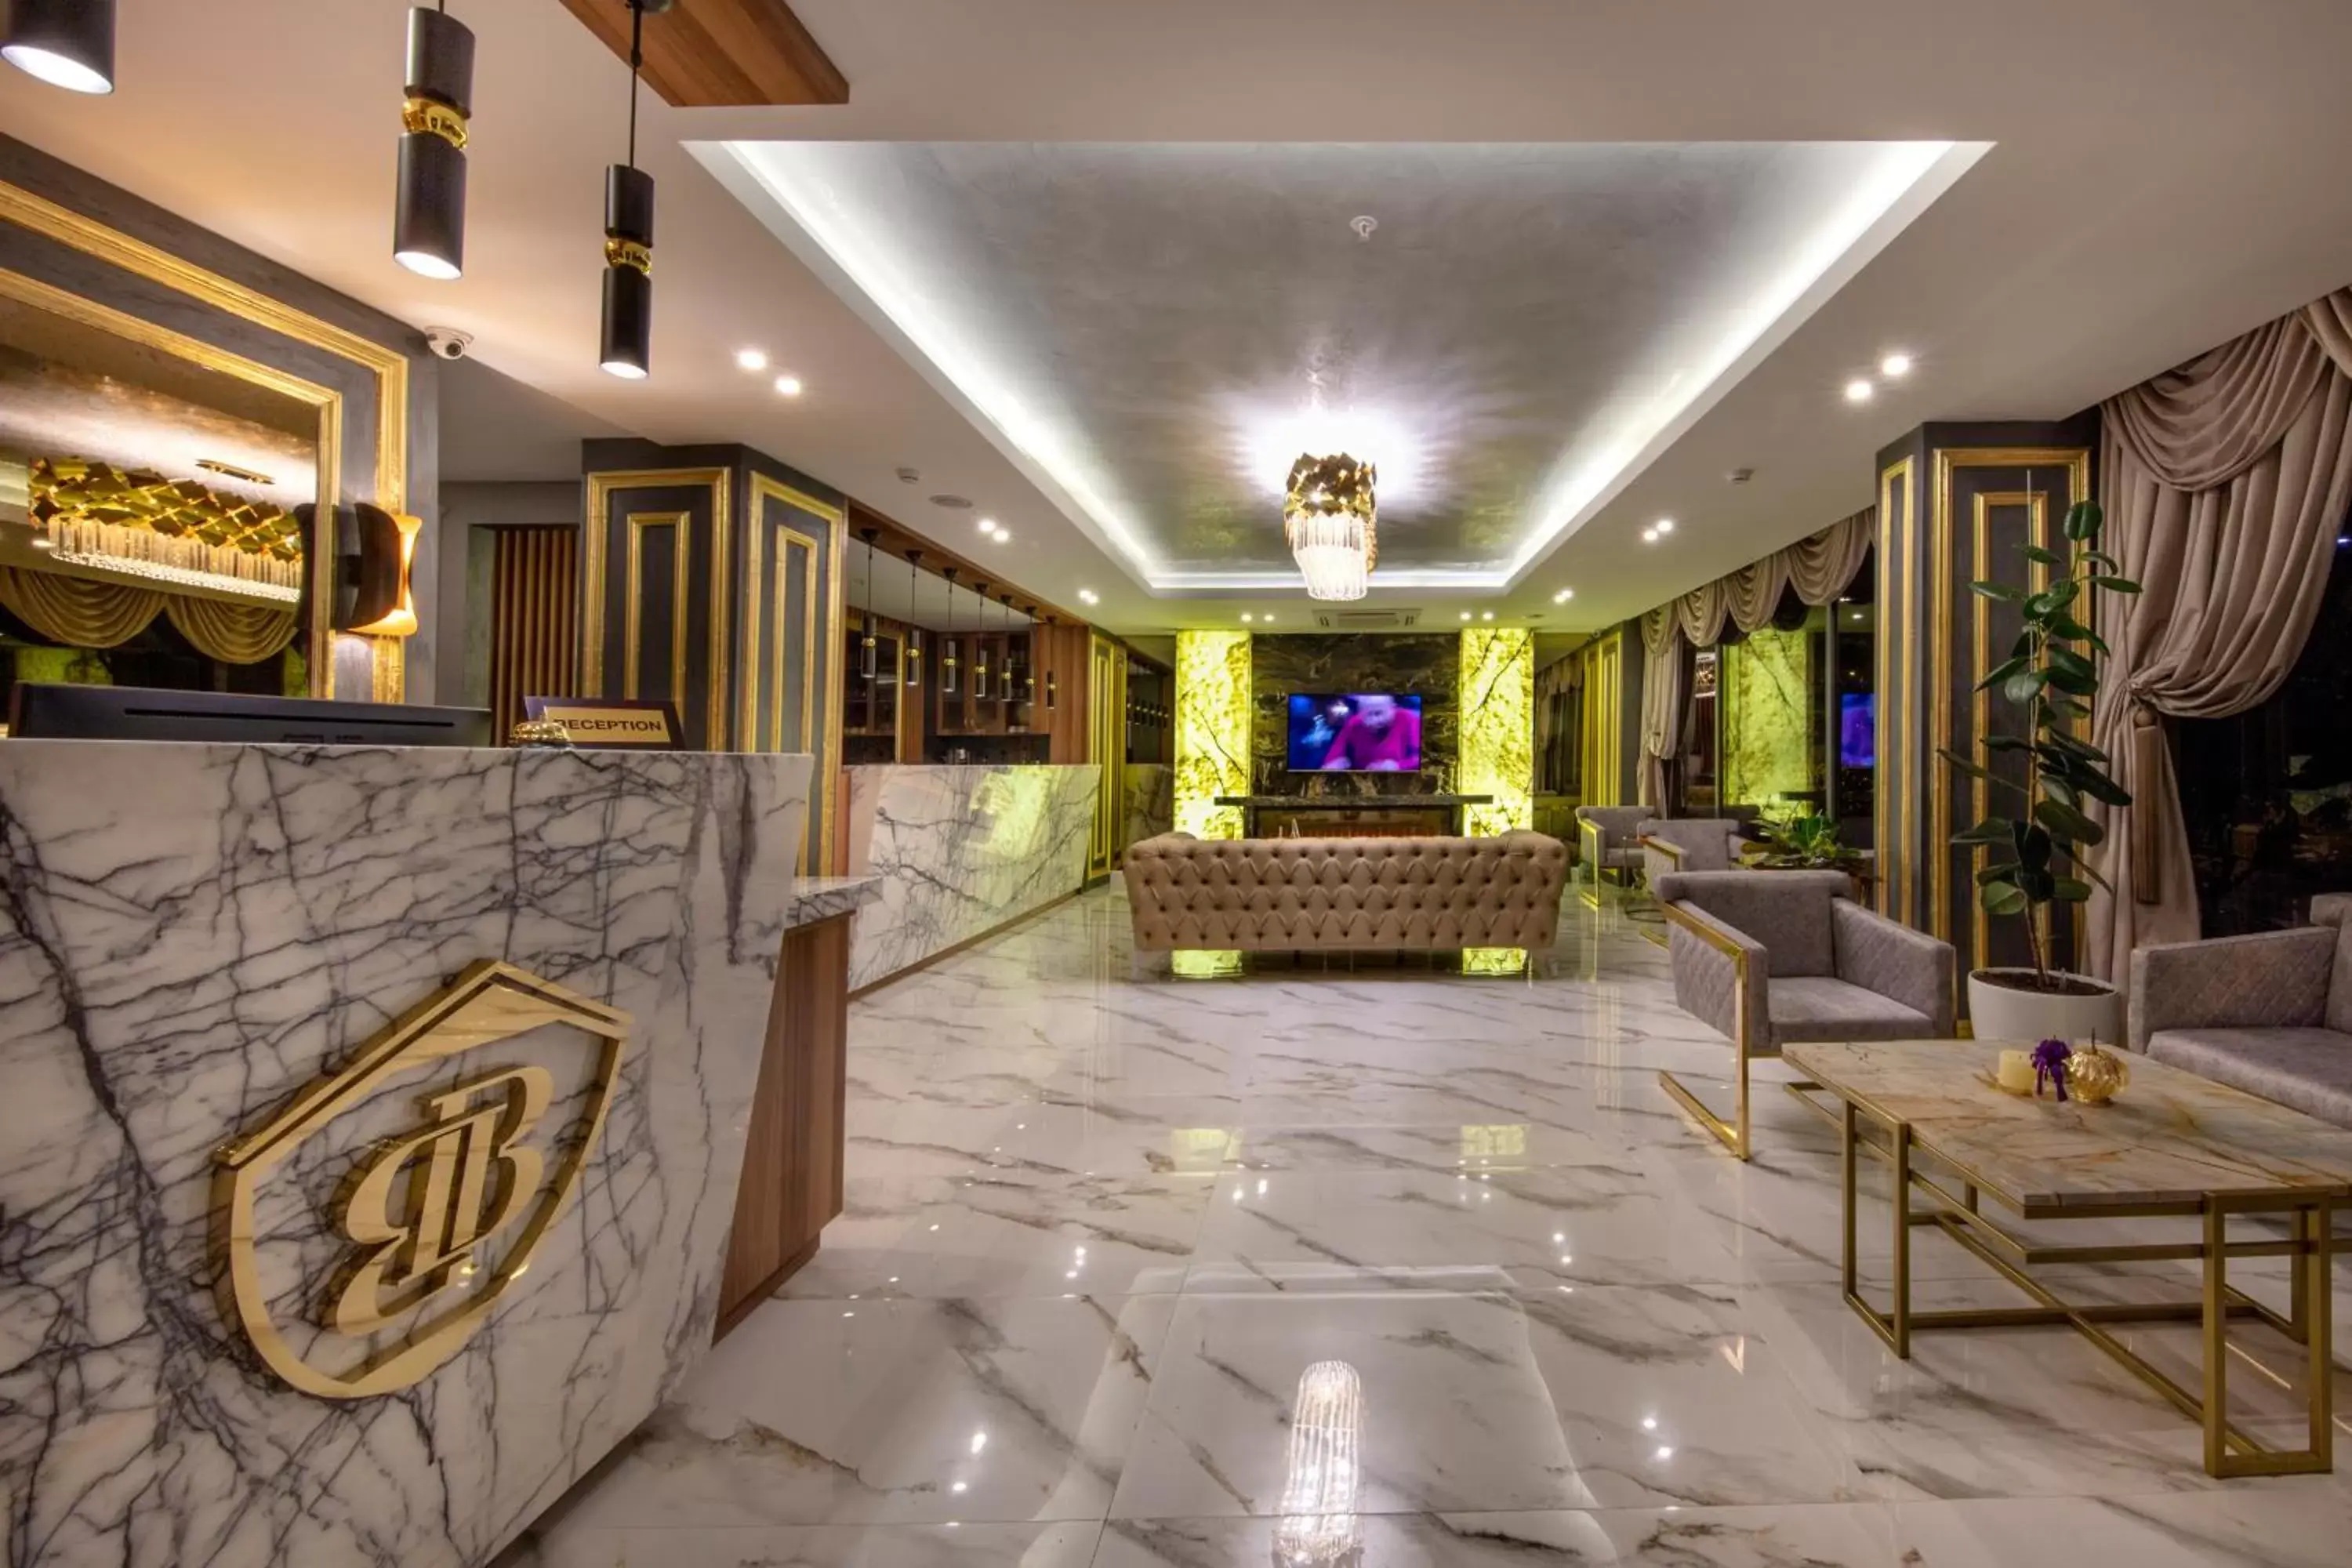 Lobby or reception, Lobby/Reception in MR BEYAZ BUTİK HOTEL